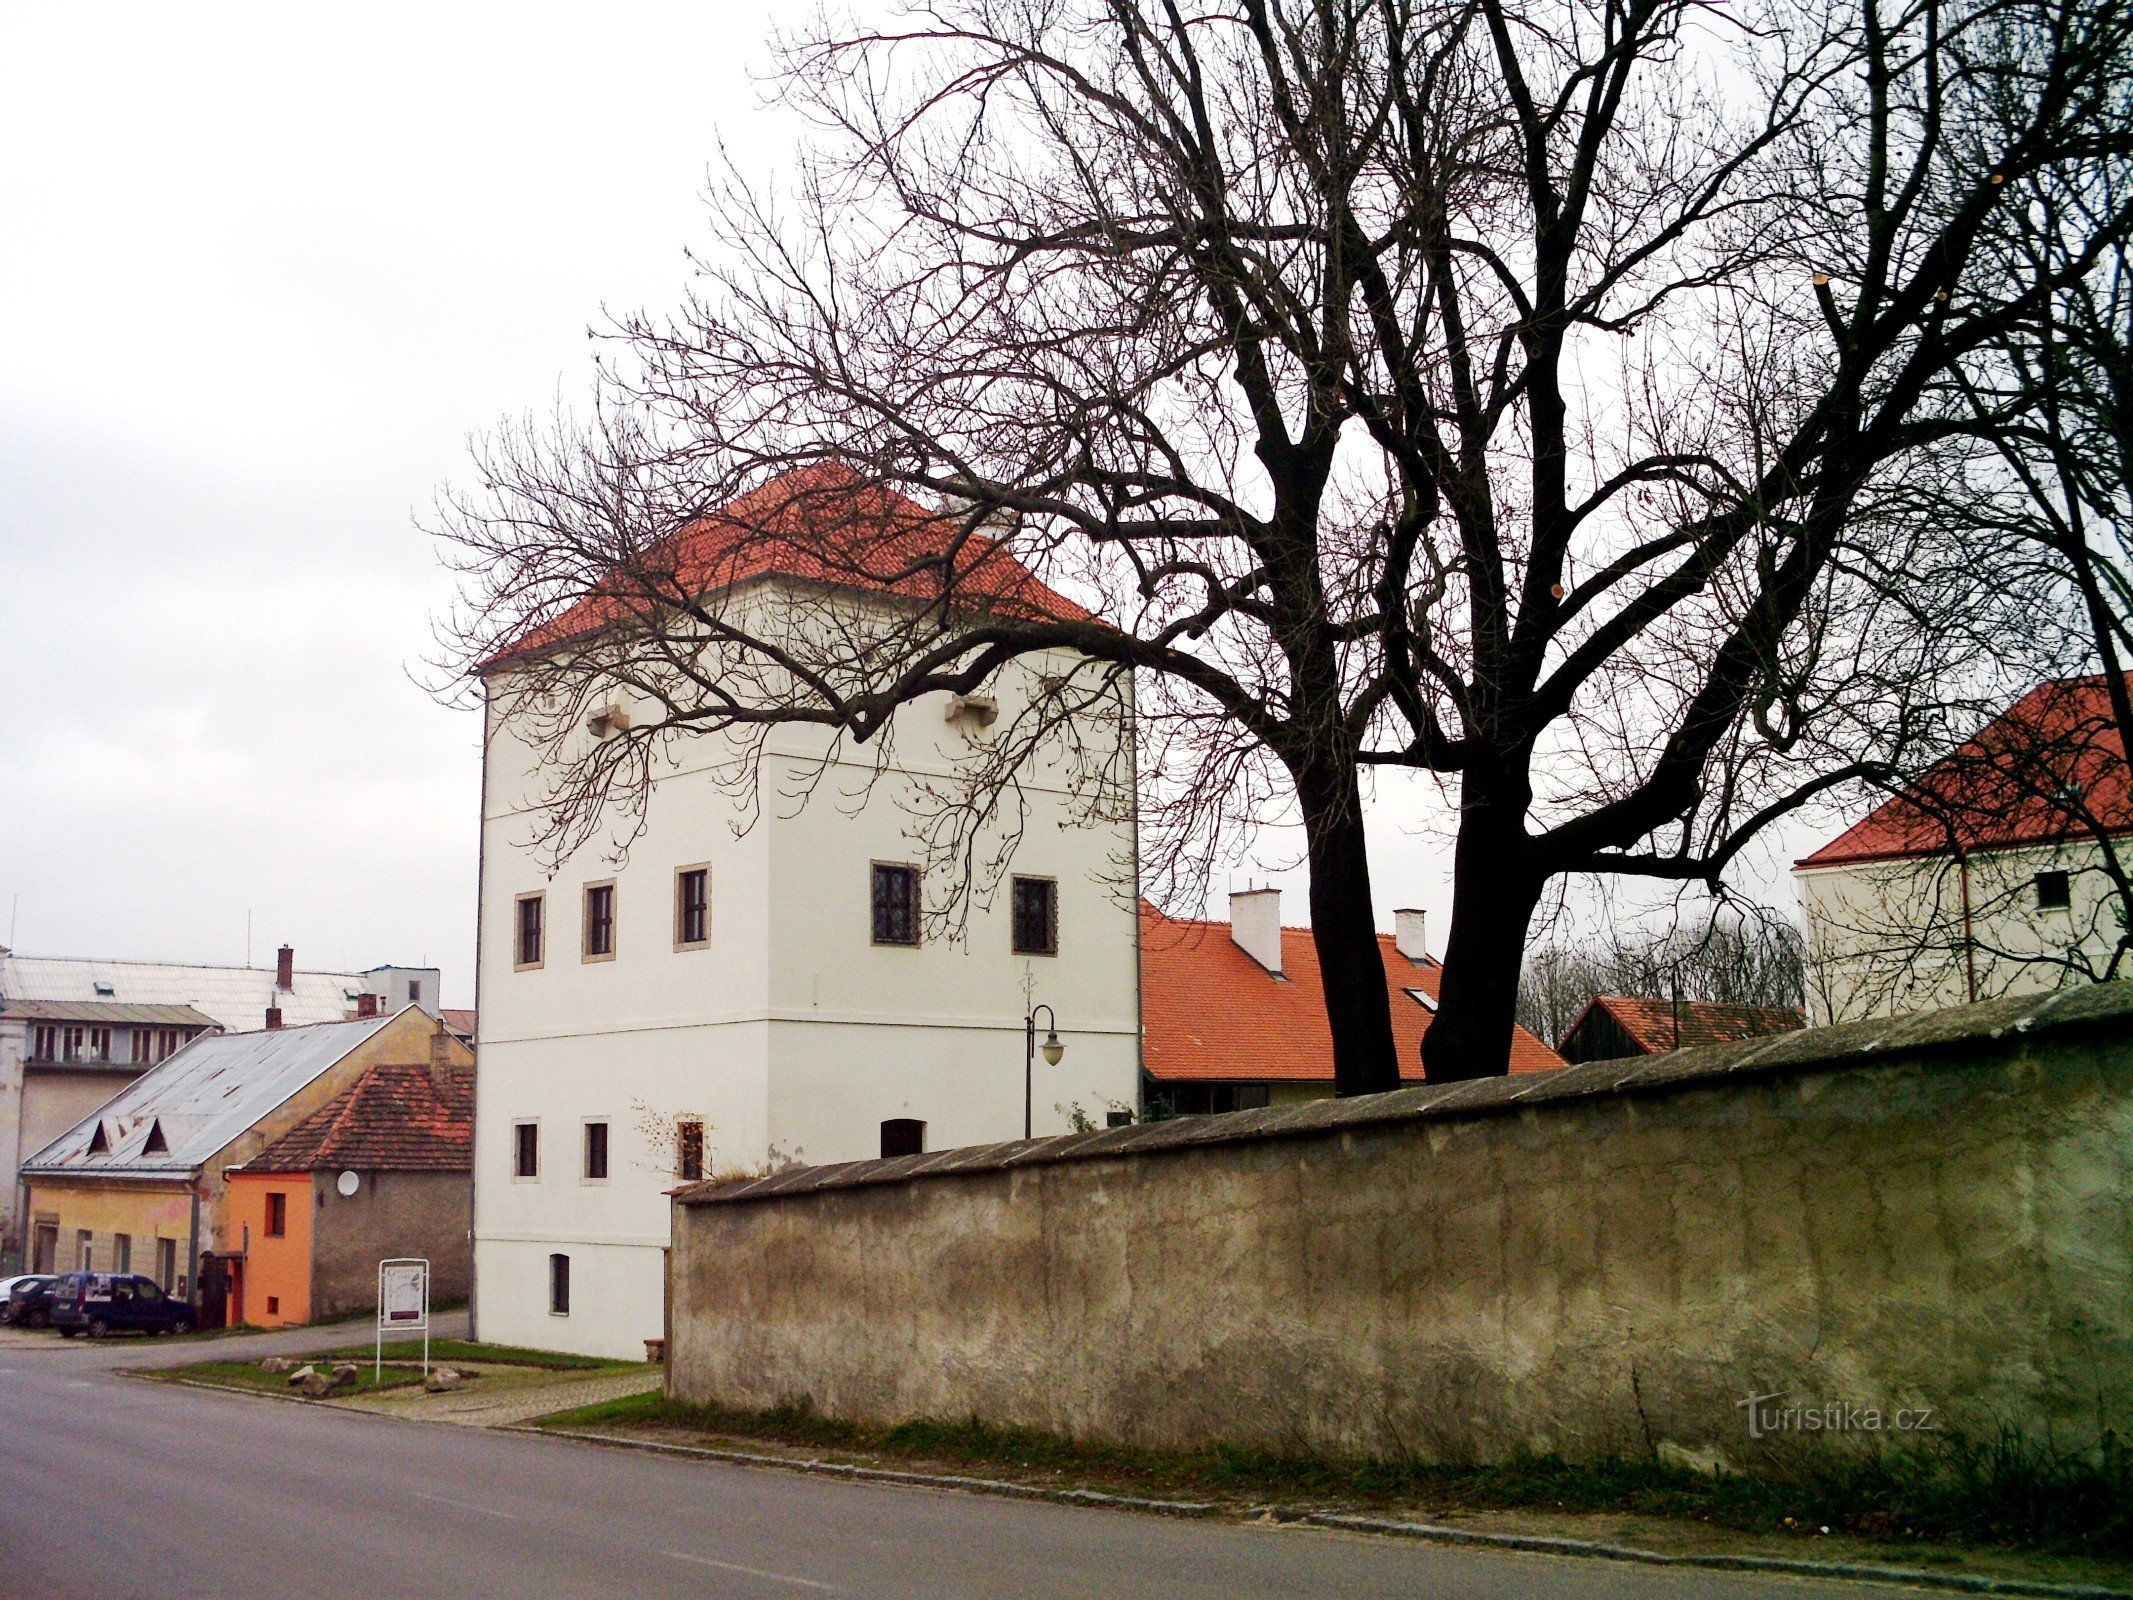 Festung Goltz, ul. 5. května 8, Golčův Jeníkov